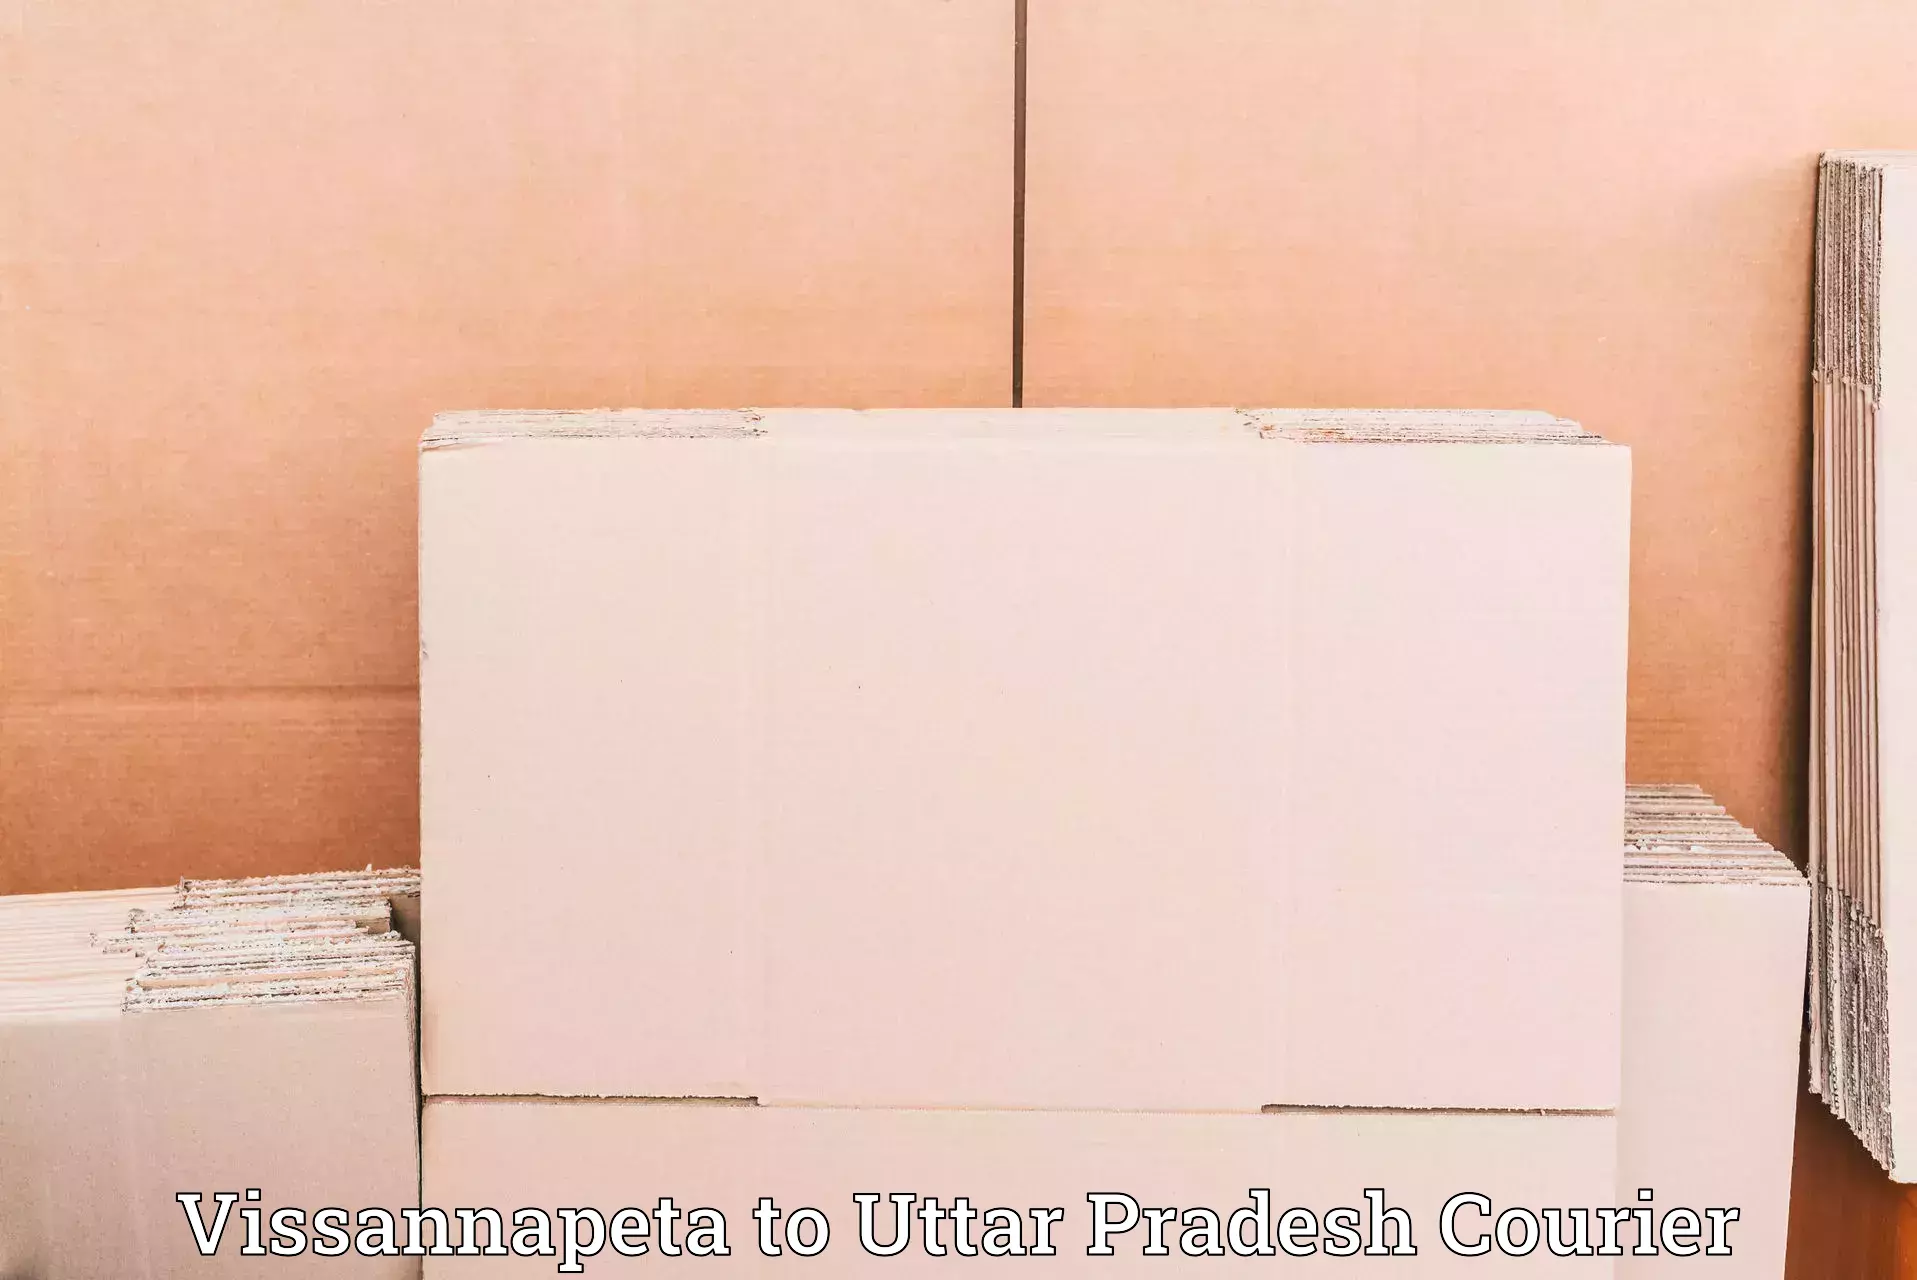 Efficient package consolidation Vissannapeta to Uttar Pradesh